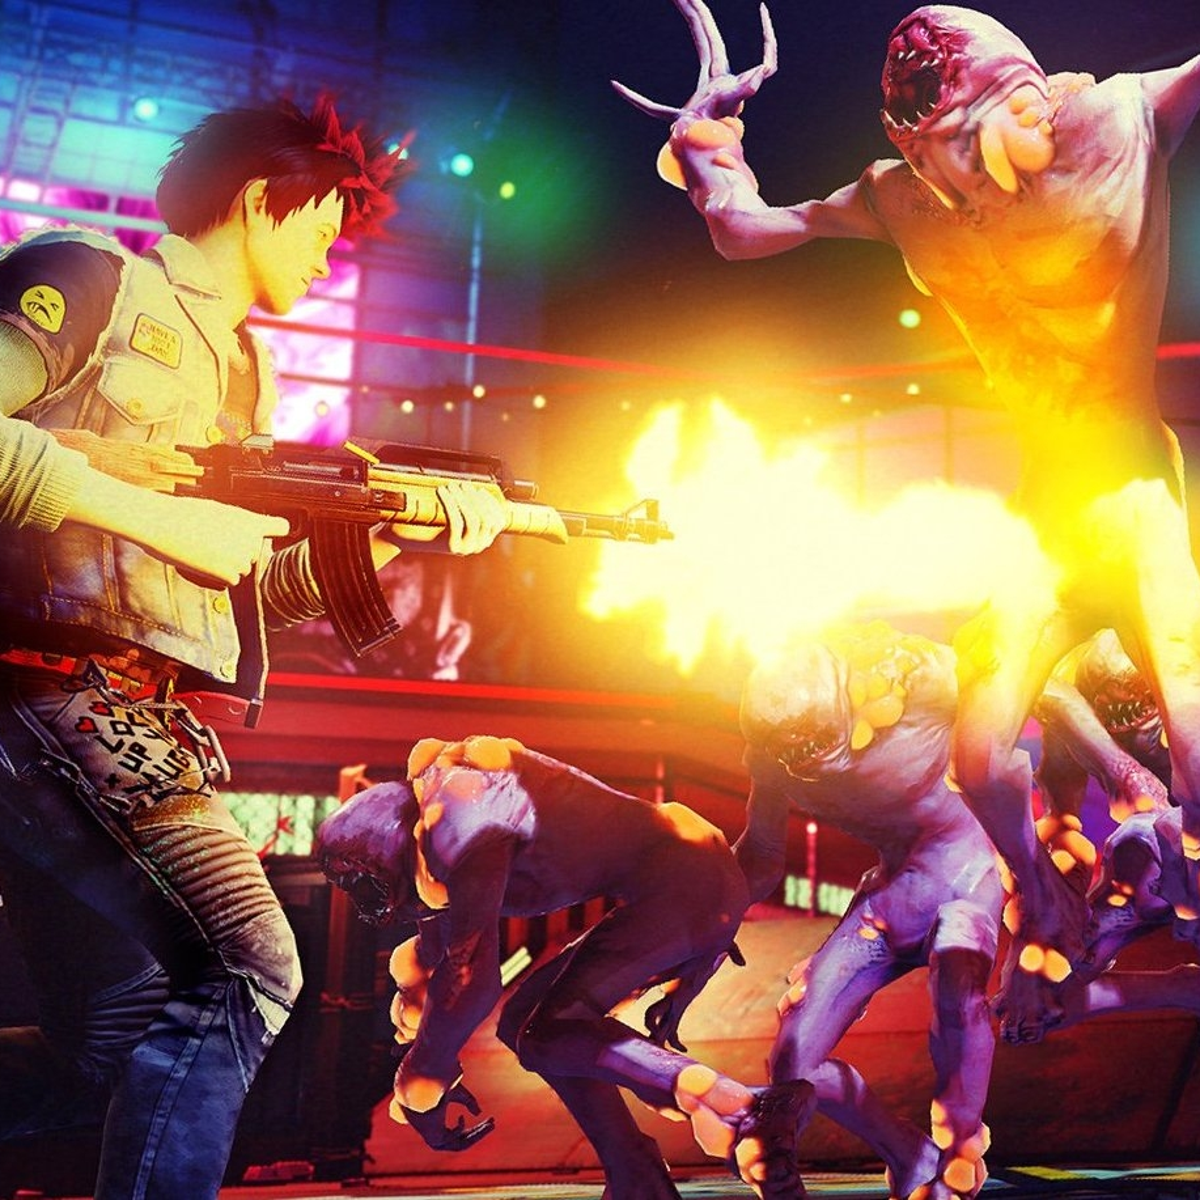 Análise Tecnológica: Sunset Overdrive na E3 2014